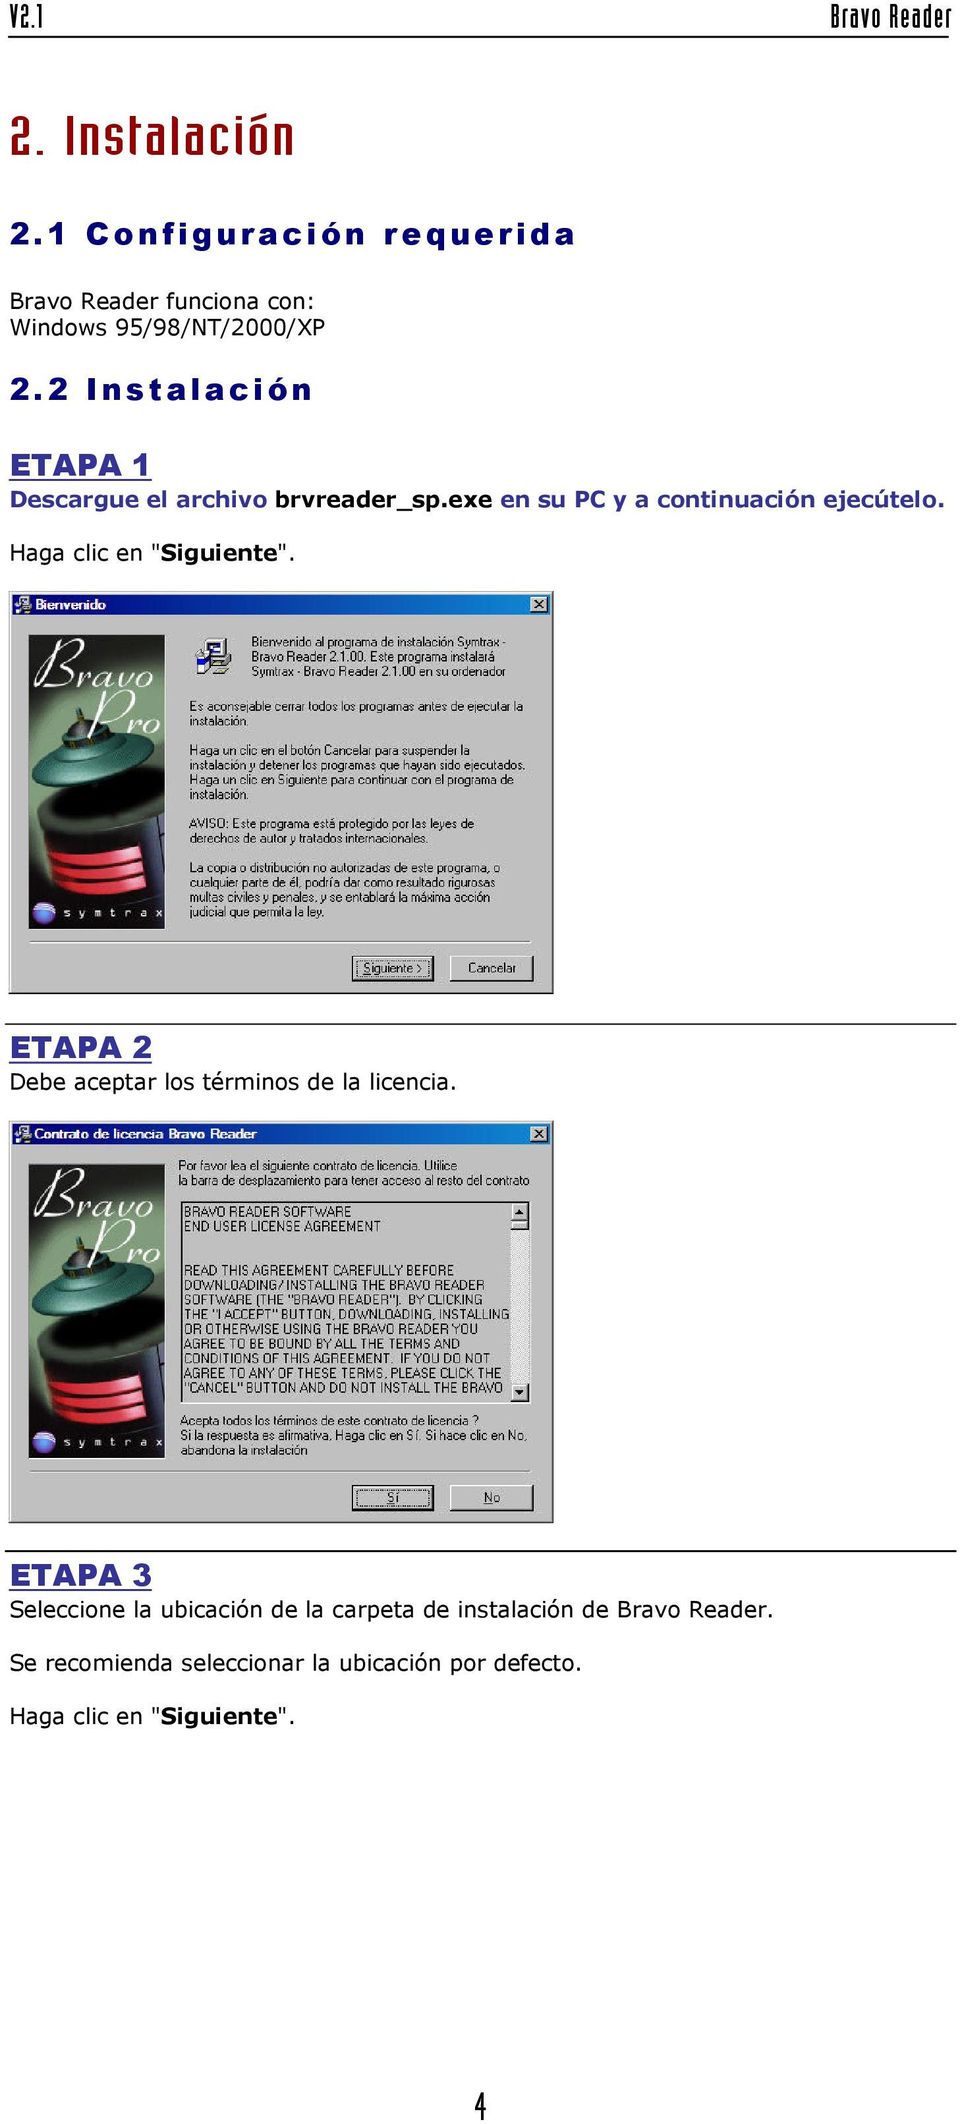 Haga clic en "Siguiente". ETAPA 2 Debe aceptar los términos de la licencia.